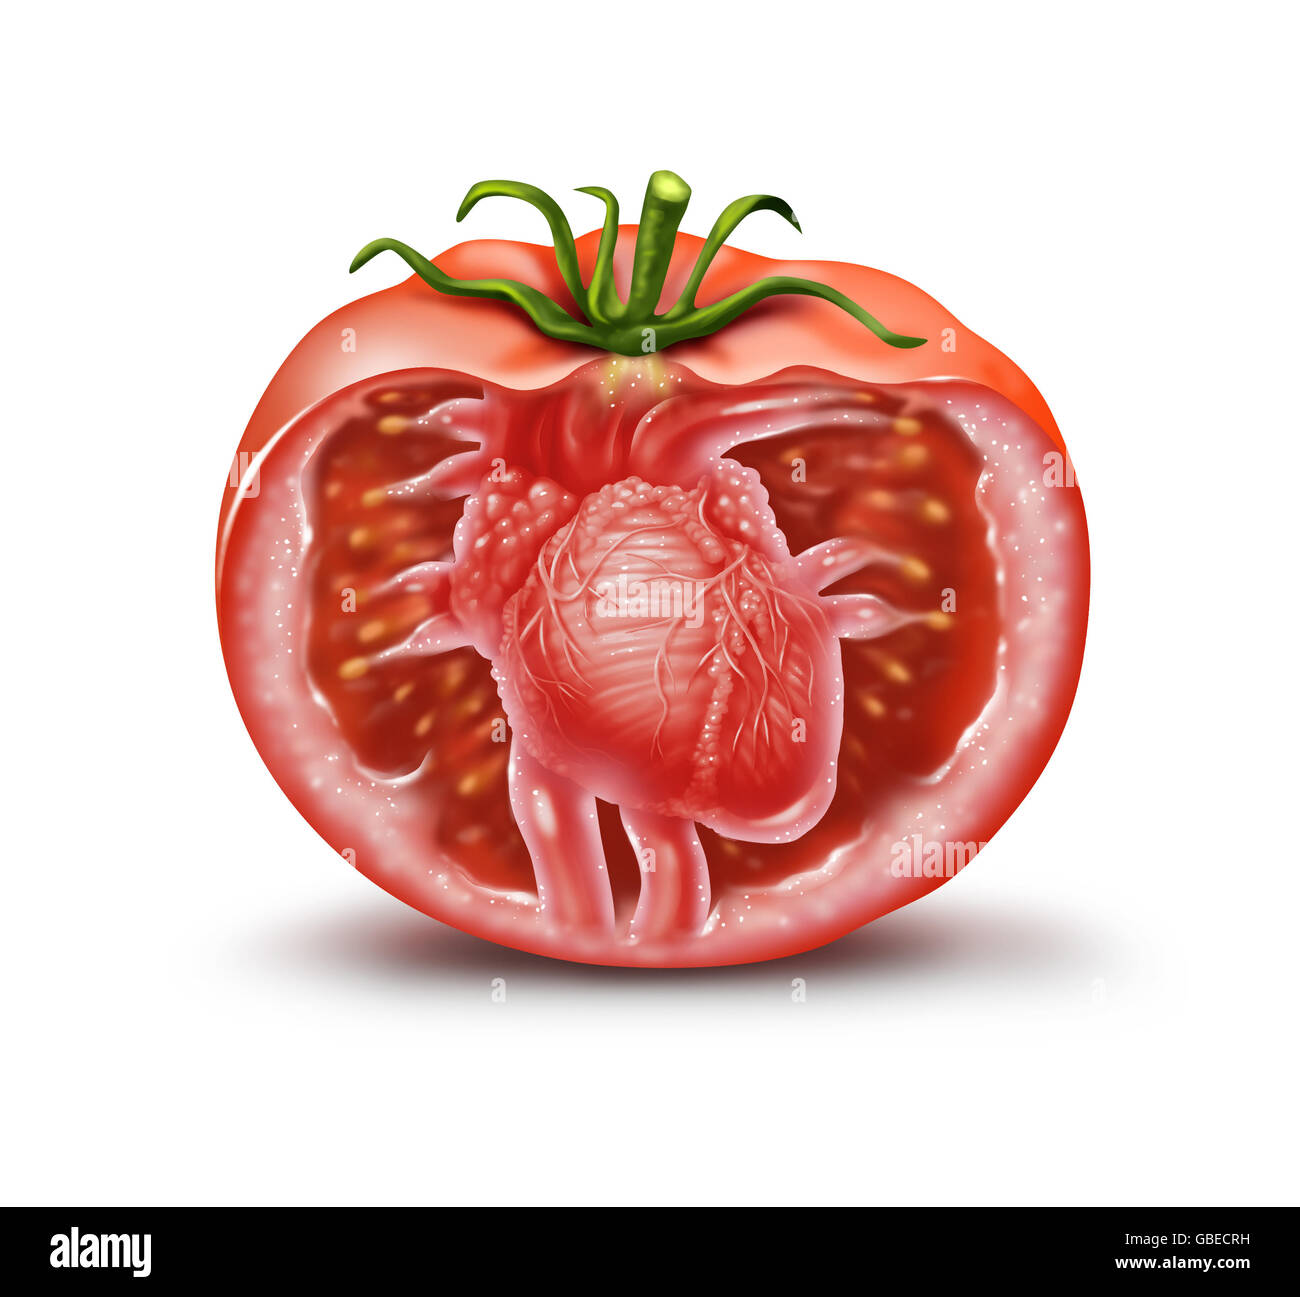 Tomaten Gesundheit medizinische Herzsymbol als Obst und Gemüse im Gesundheitswesen Symbol für natürliches Antioxidans und Herz-Kreislauf-Nahrungsergänzung zur Vermeidung von Herzinfarkten und Schlaganfällen reich an Lycopin und Carotinoide in eine 3D Darstellung Stil. Stockfoto